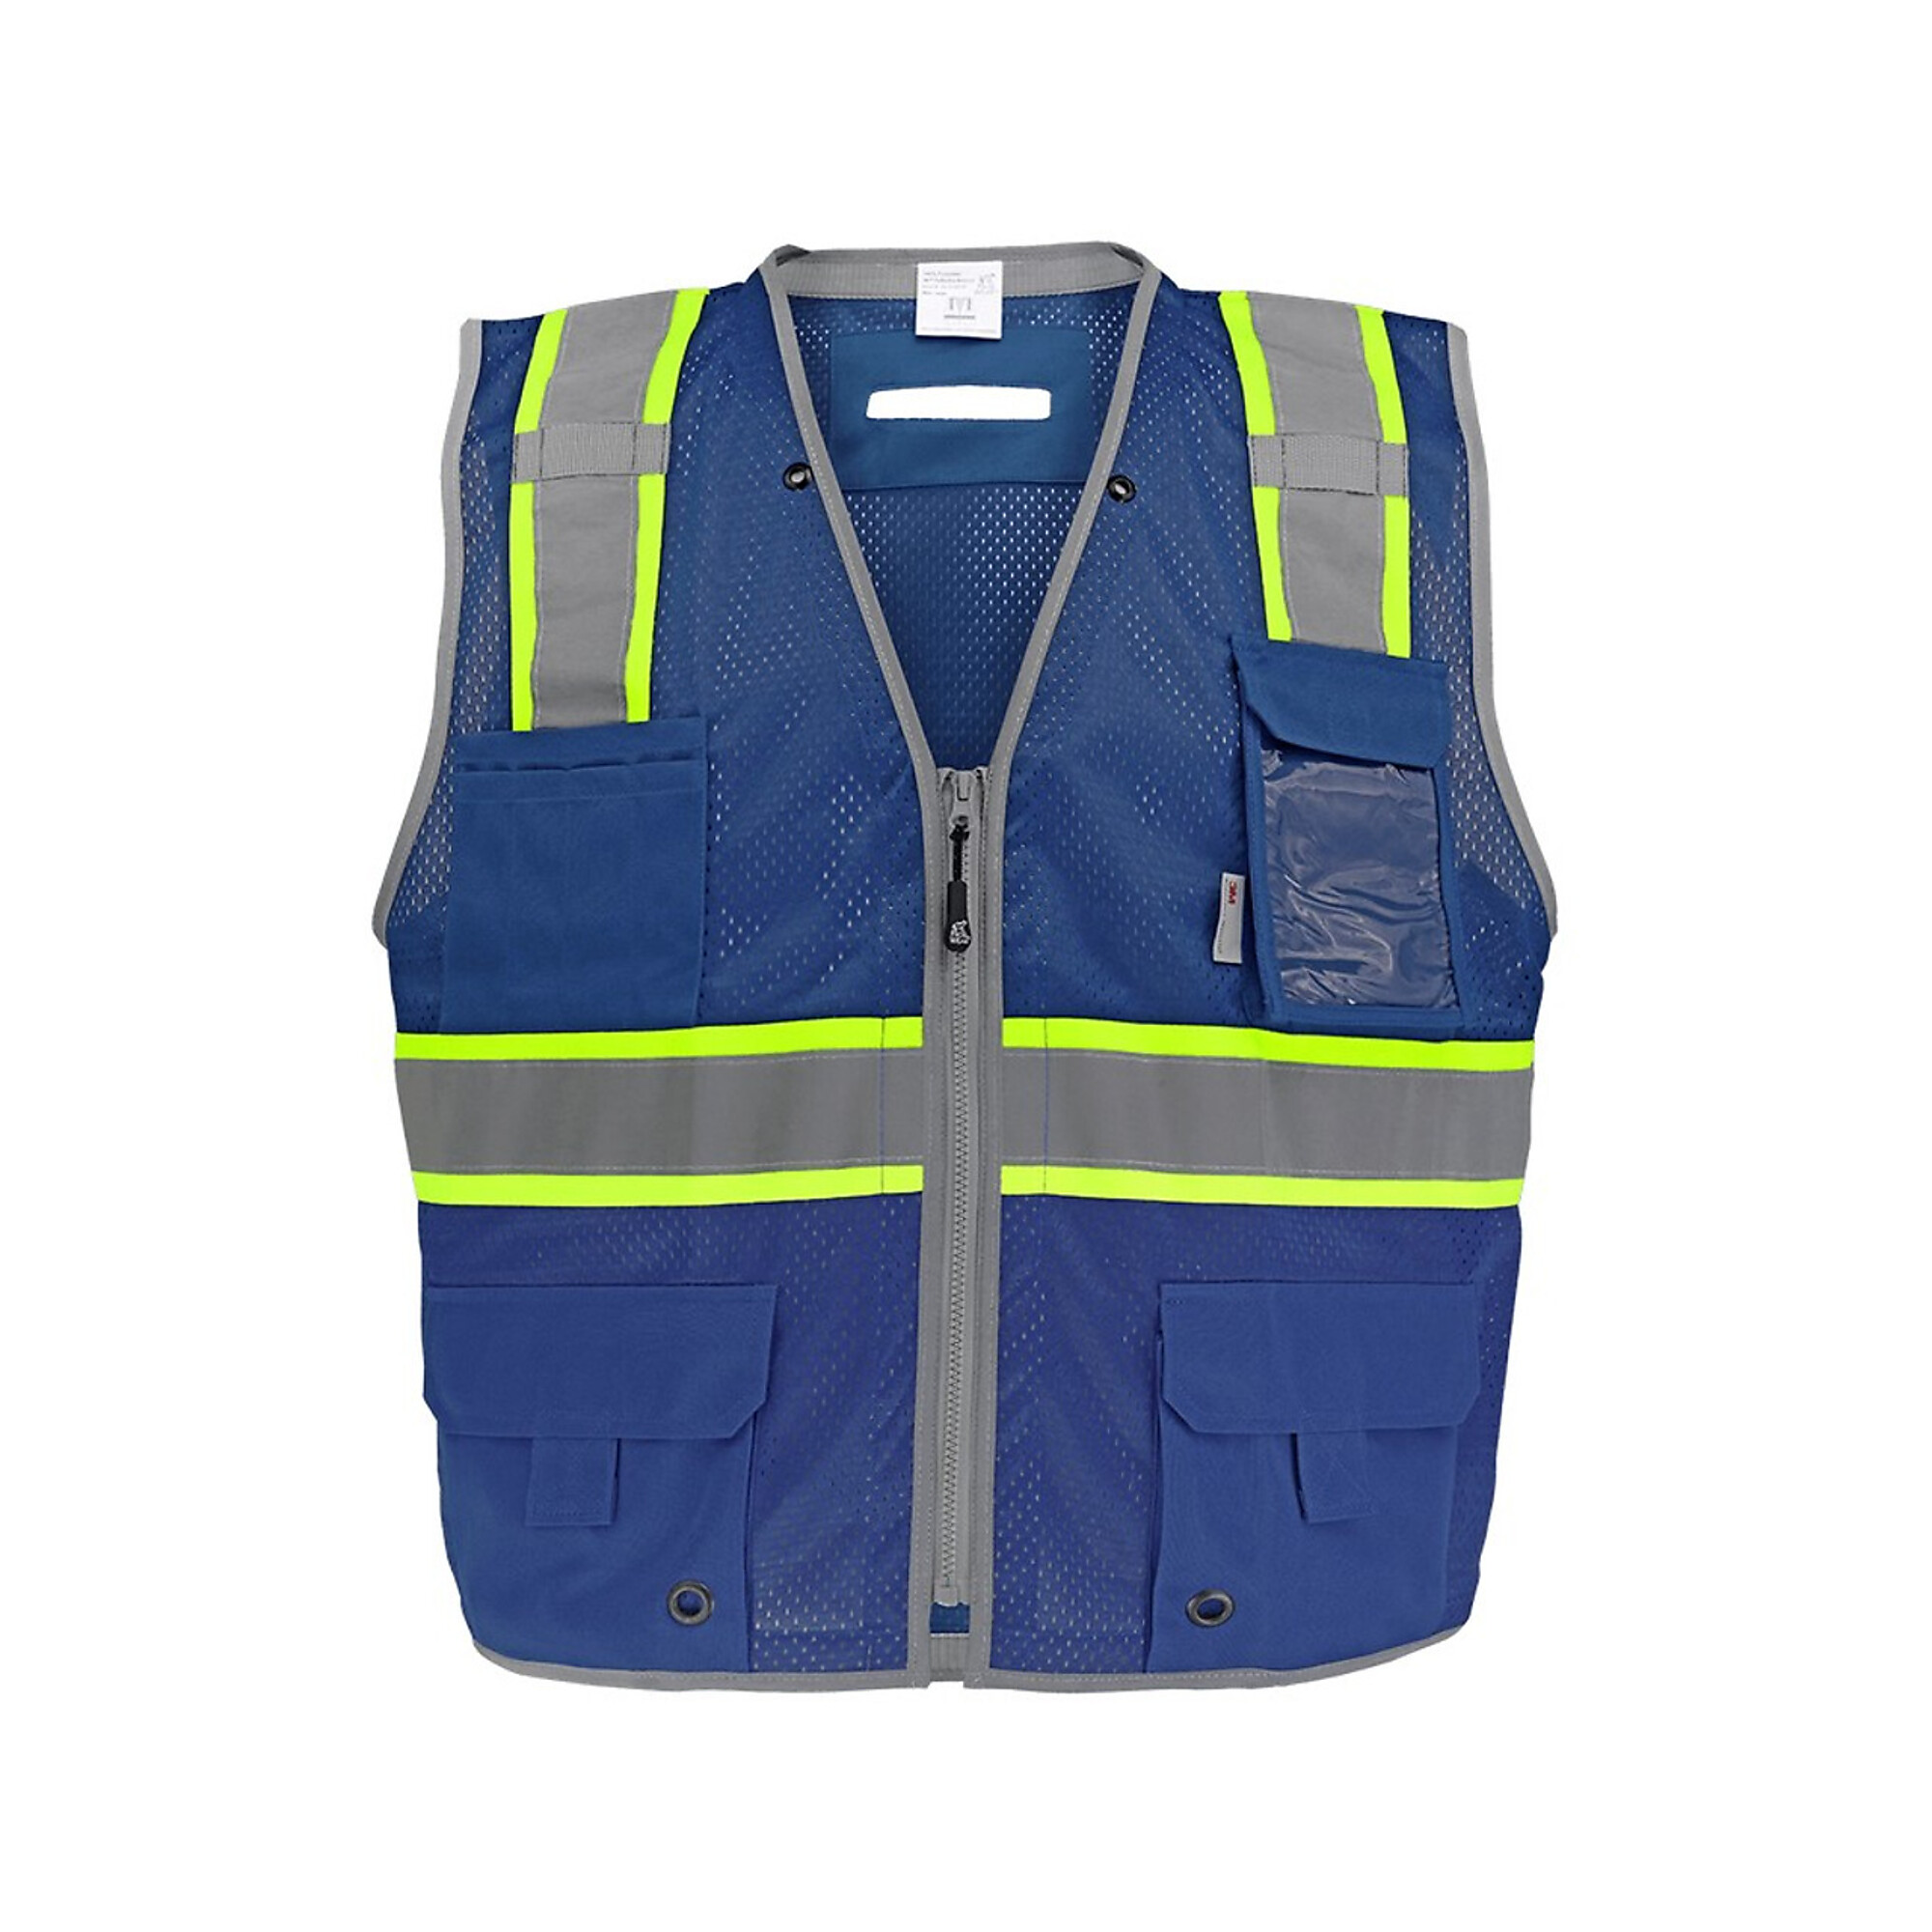 FrogWear Surveyors Vest, 3XL, Blue w/ Reflector, Model GLO-067B-3XL